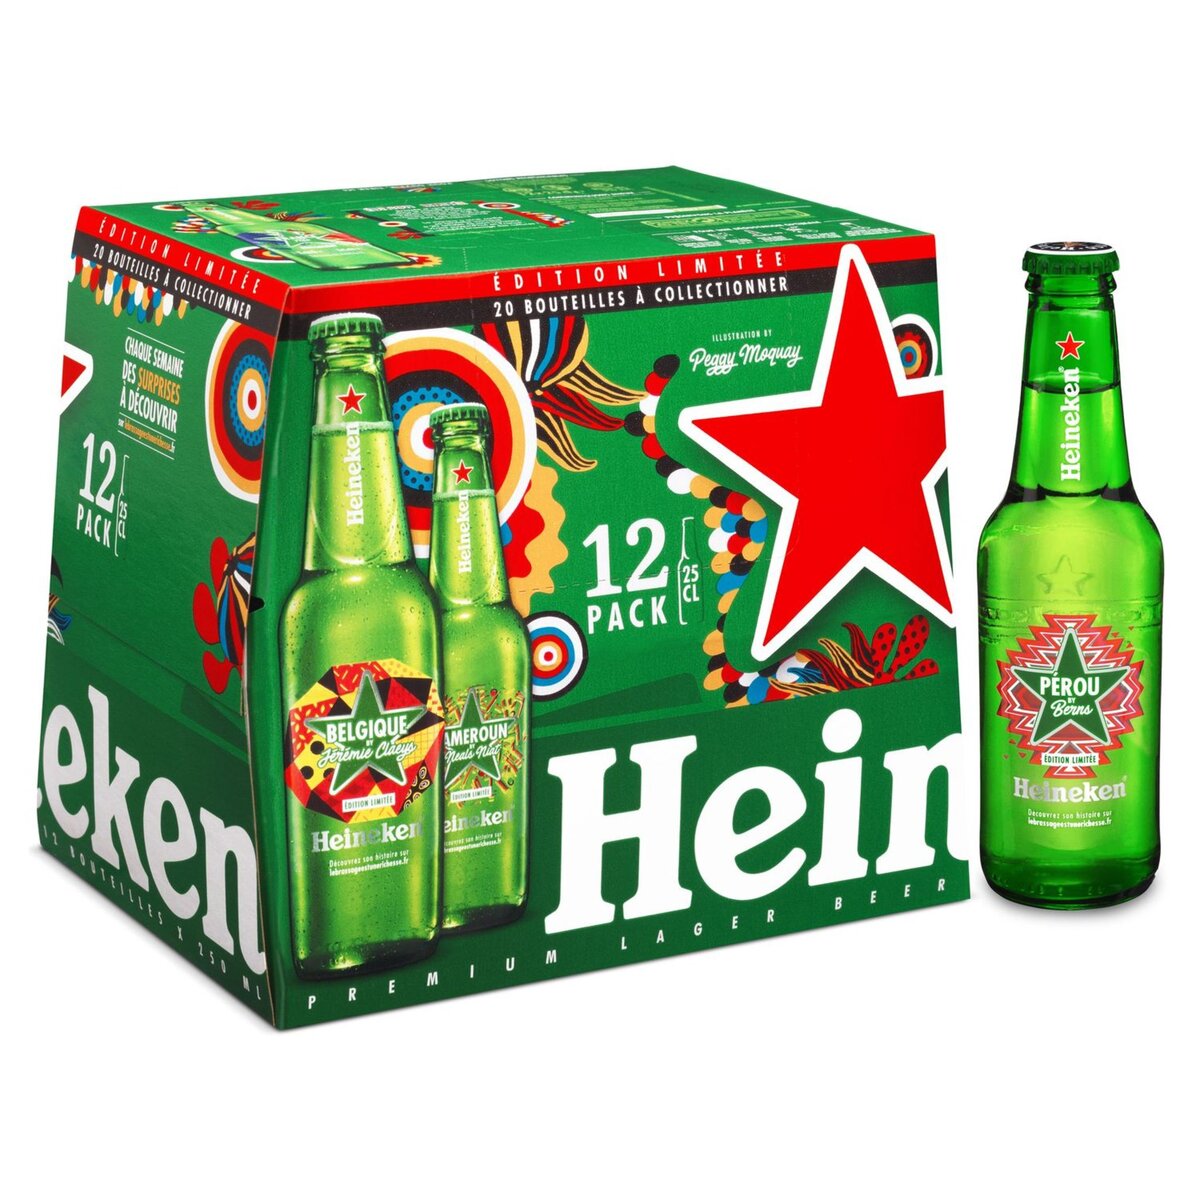 HEINEKEN Heineken bière blonde 5° -12x25cl